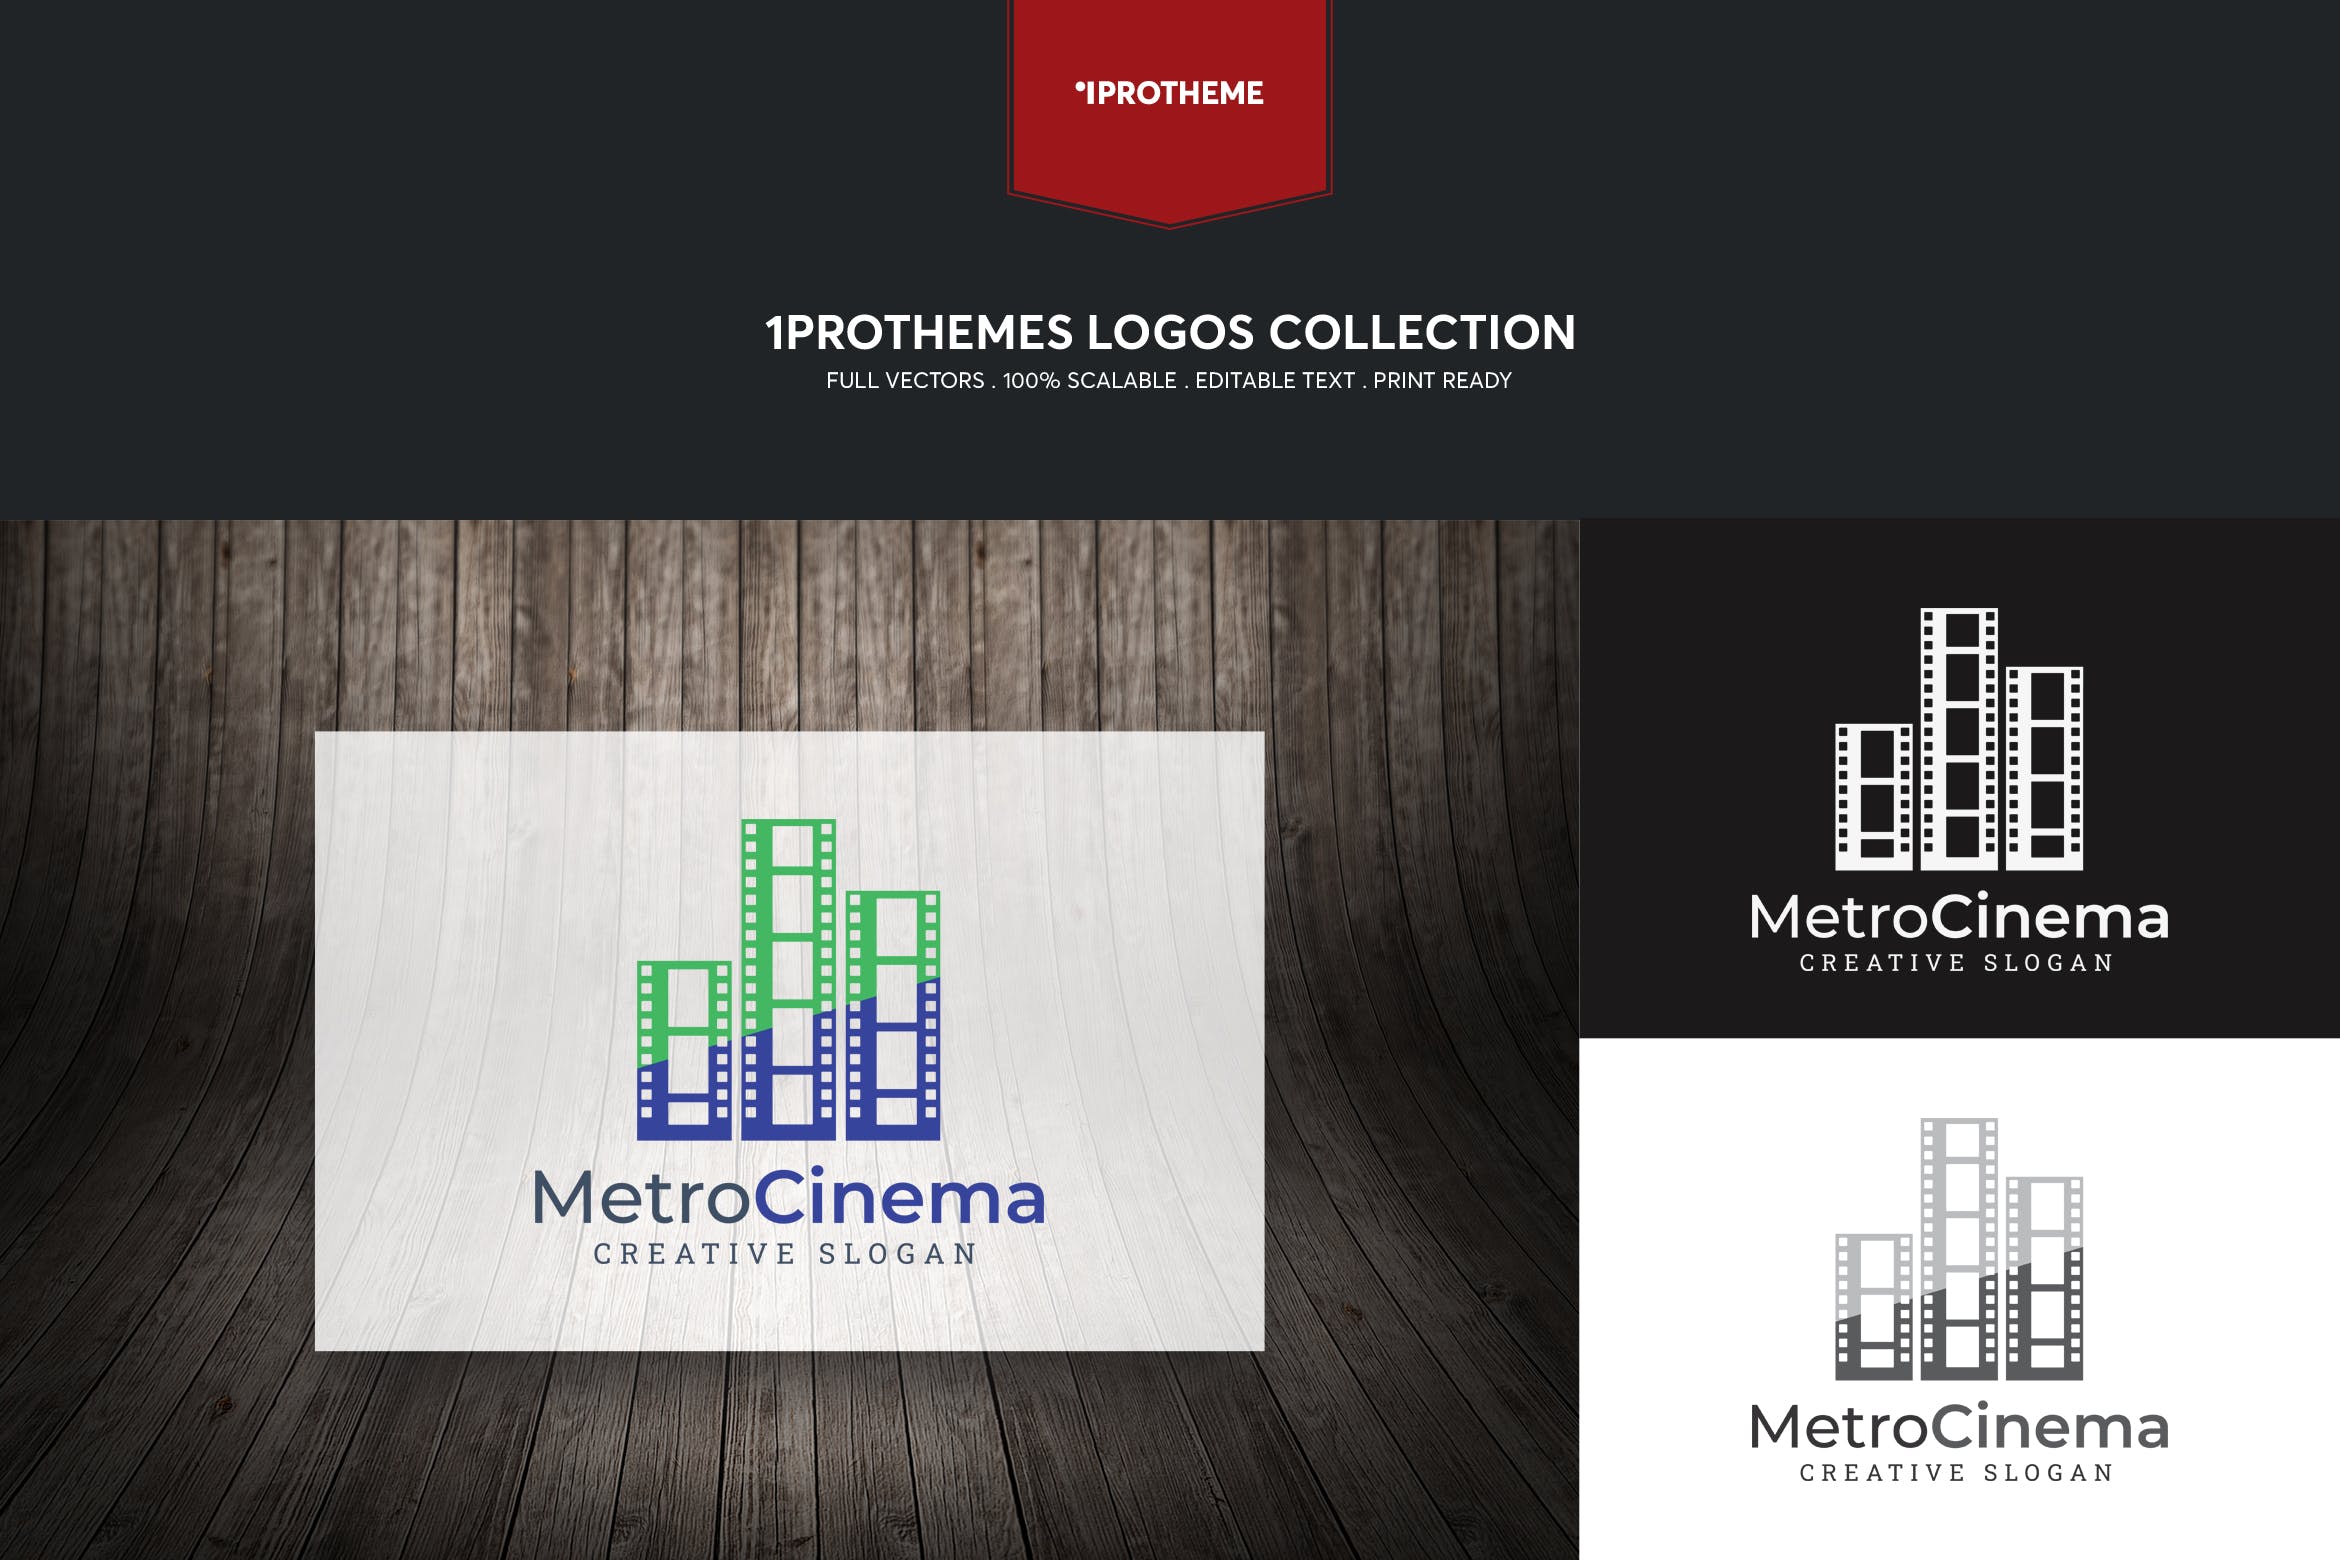 电影公司/影院品牌Logo设计16设计网精选模板 Metro Cinema Logo Template插图